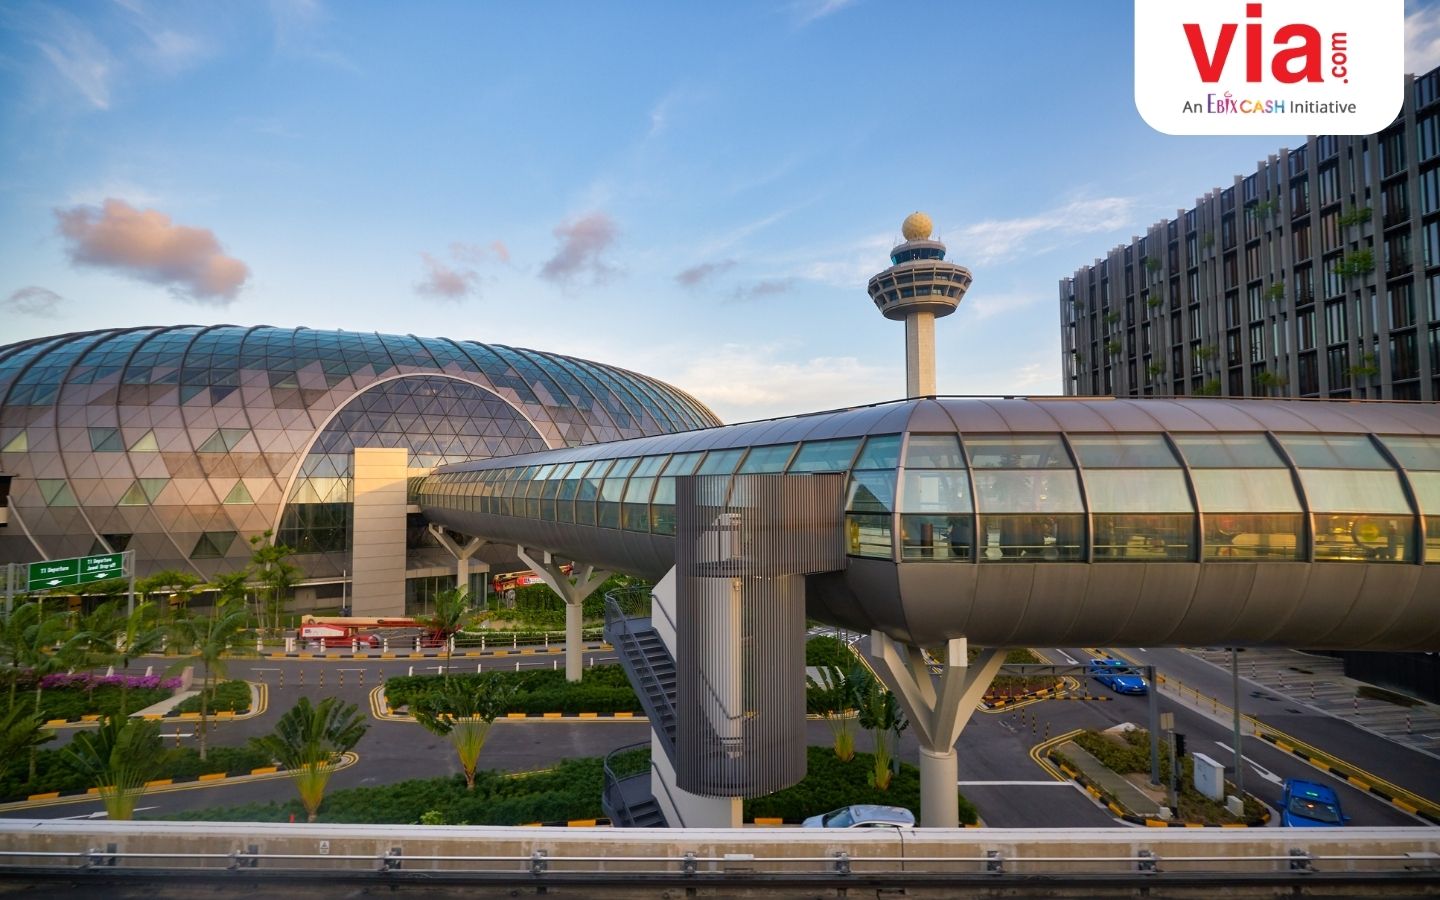 Keajaiban di Bandara Internasional Changi: Jelajah Singapura bersama Scoot